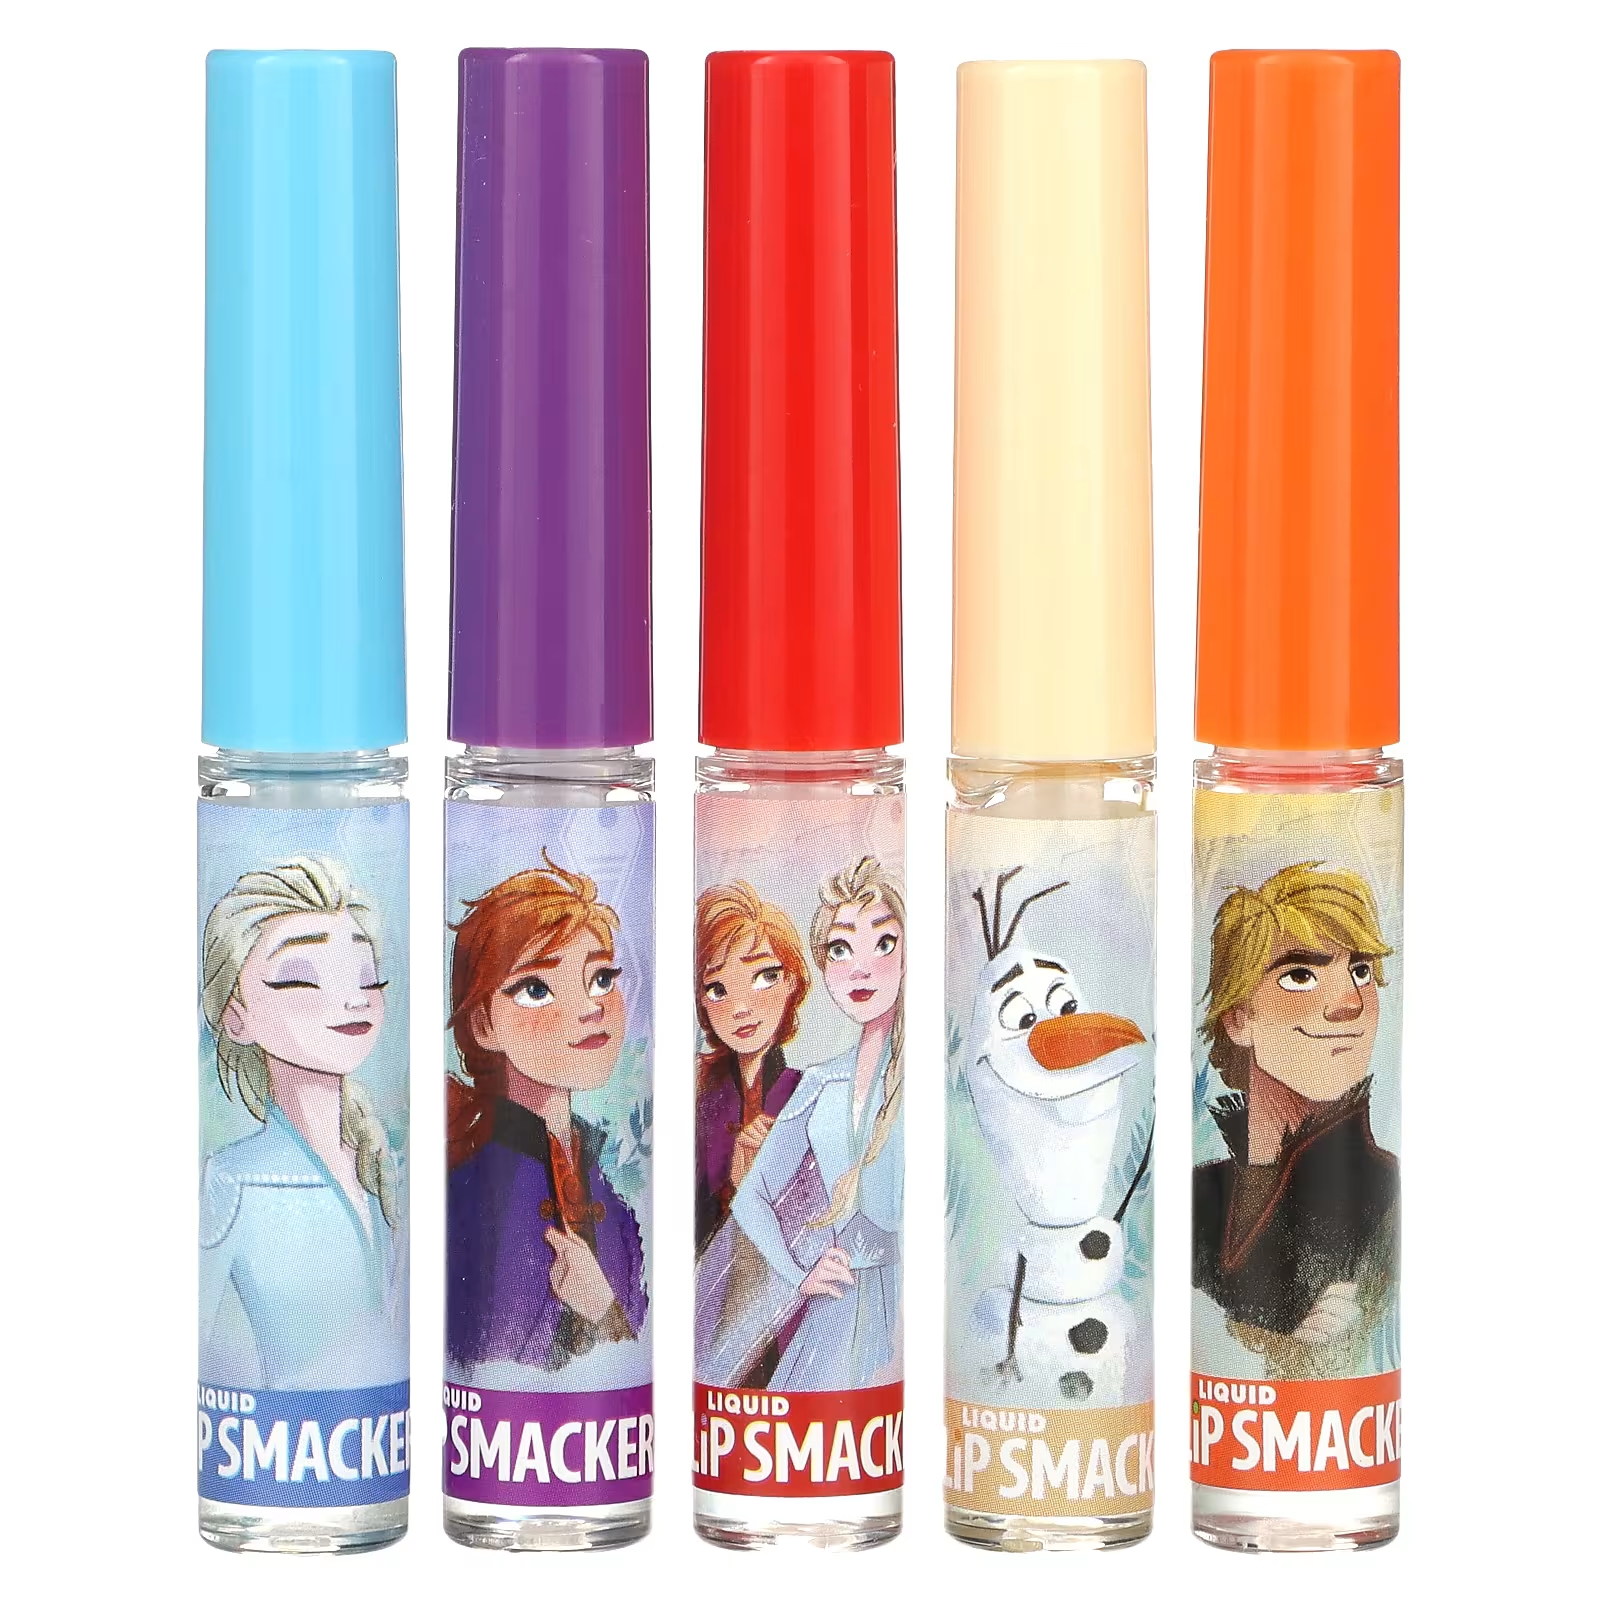 Lip Smacker Disney Frozen жидкий блеск для губ набор разных вкусов 5 шт. 14 мл (0,45 жидк. унции) lip smacker disney frozen жидкий блеск для губ набор разных вкусов 5 шт 14 мл 0 45 жидк унции